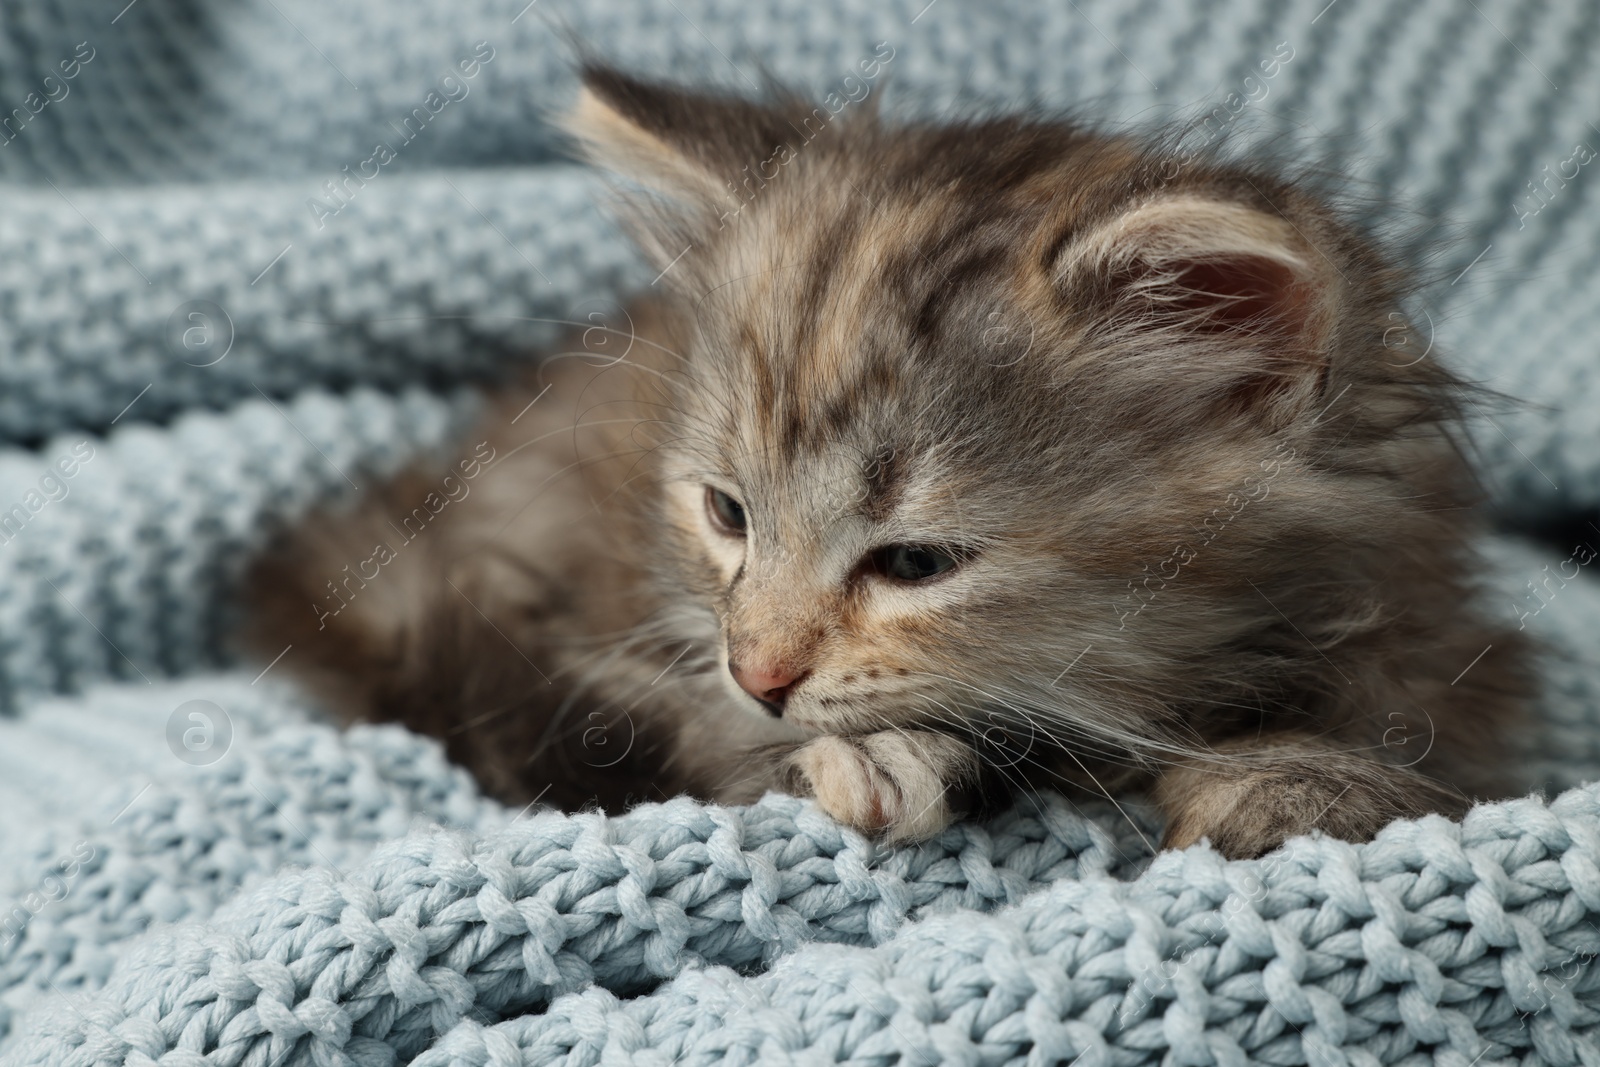 Photo of Cute kitten on light blue knitted blanket